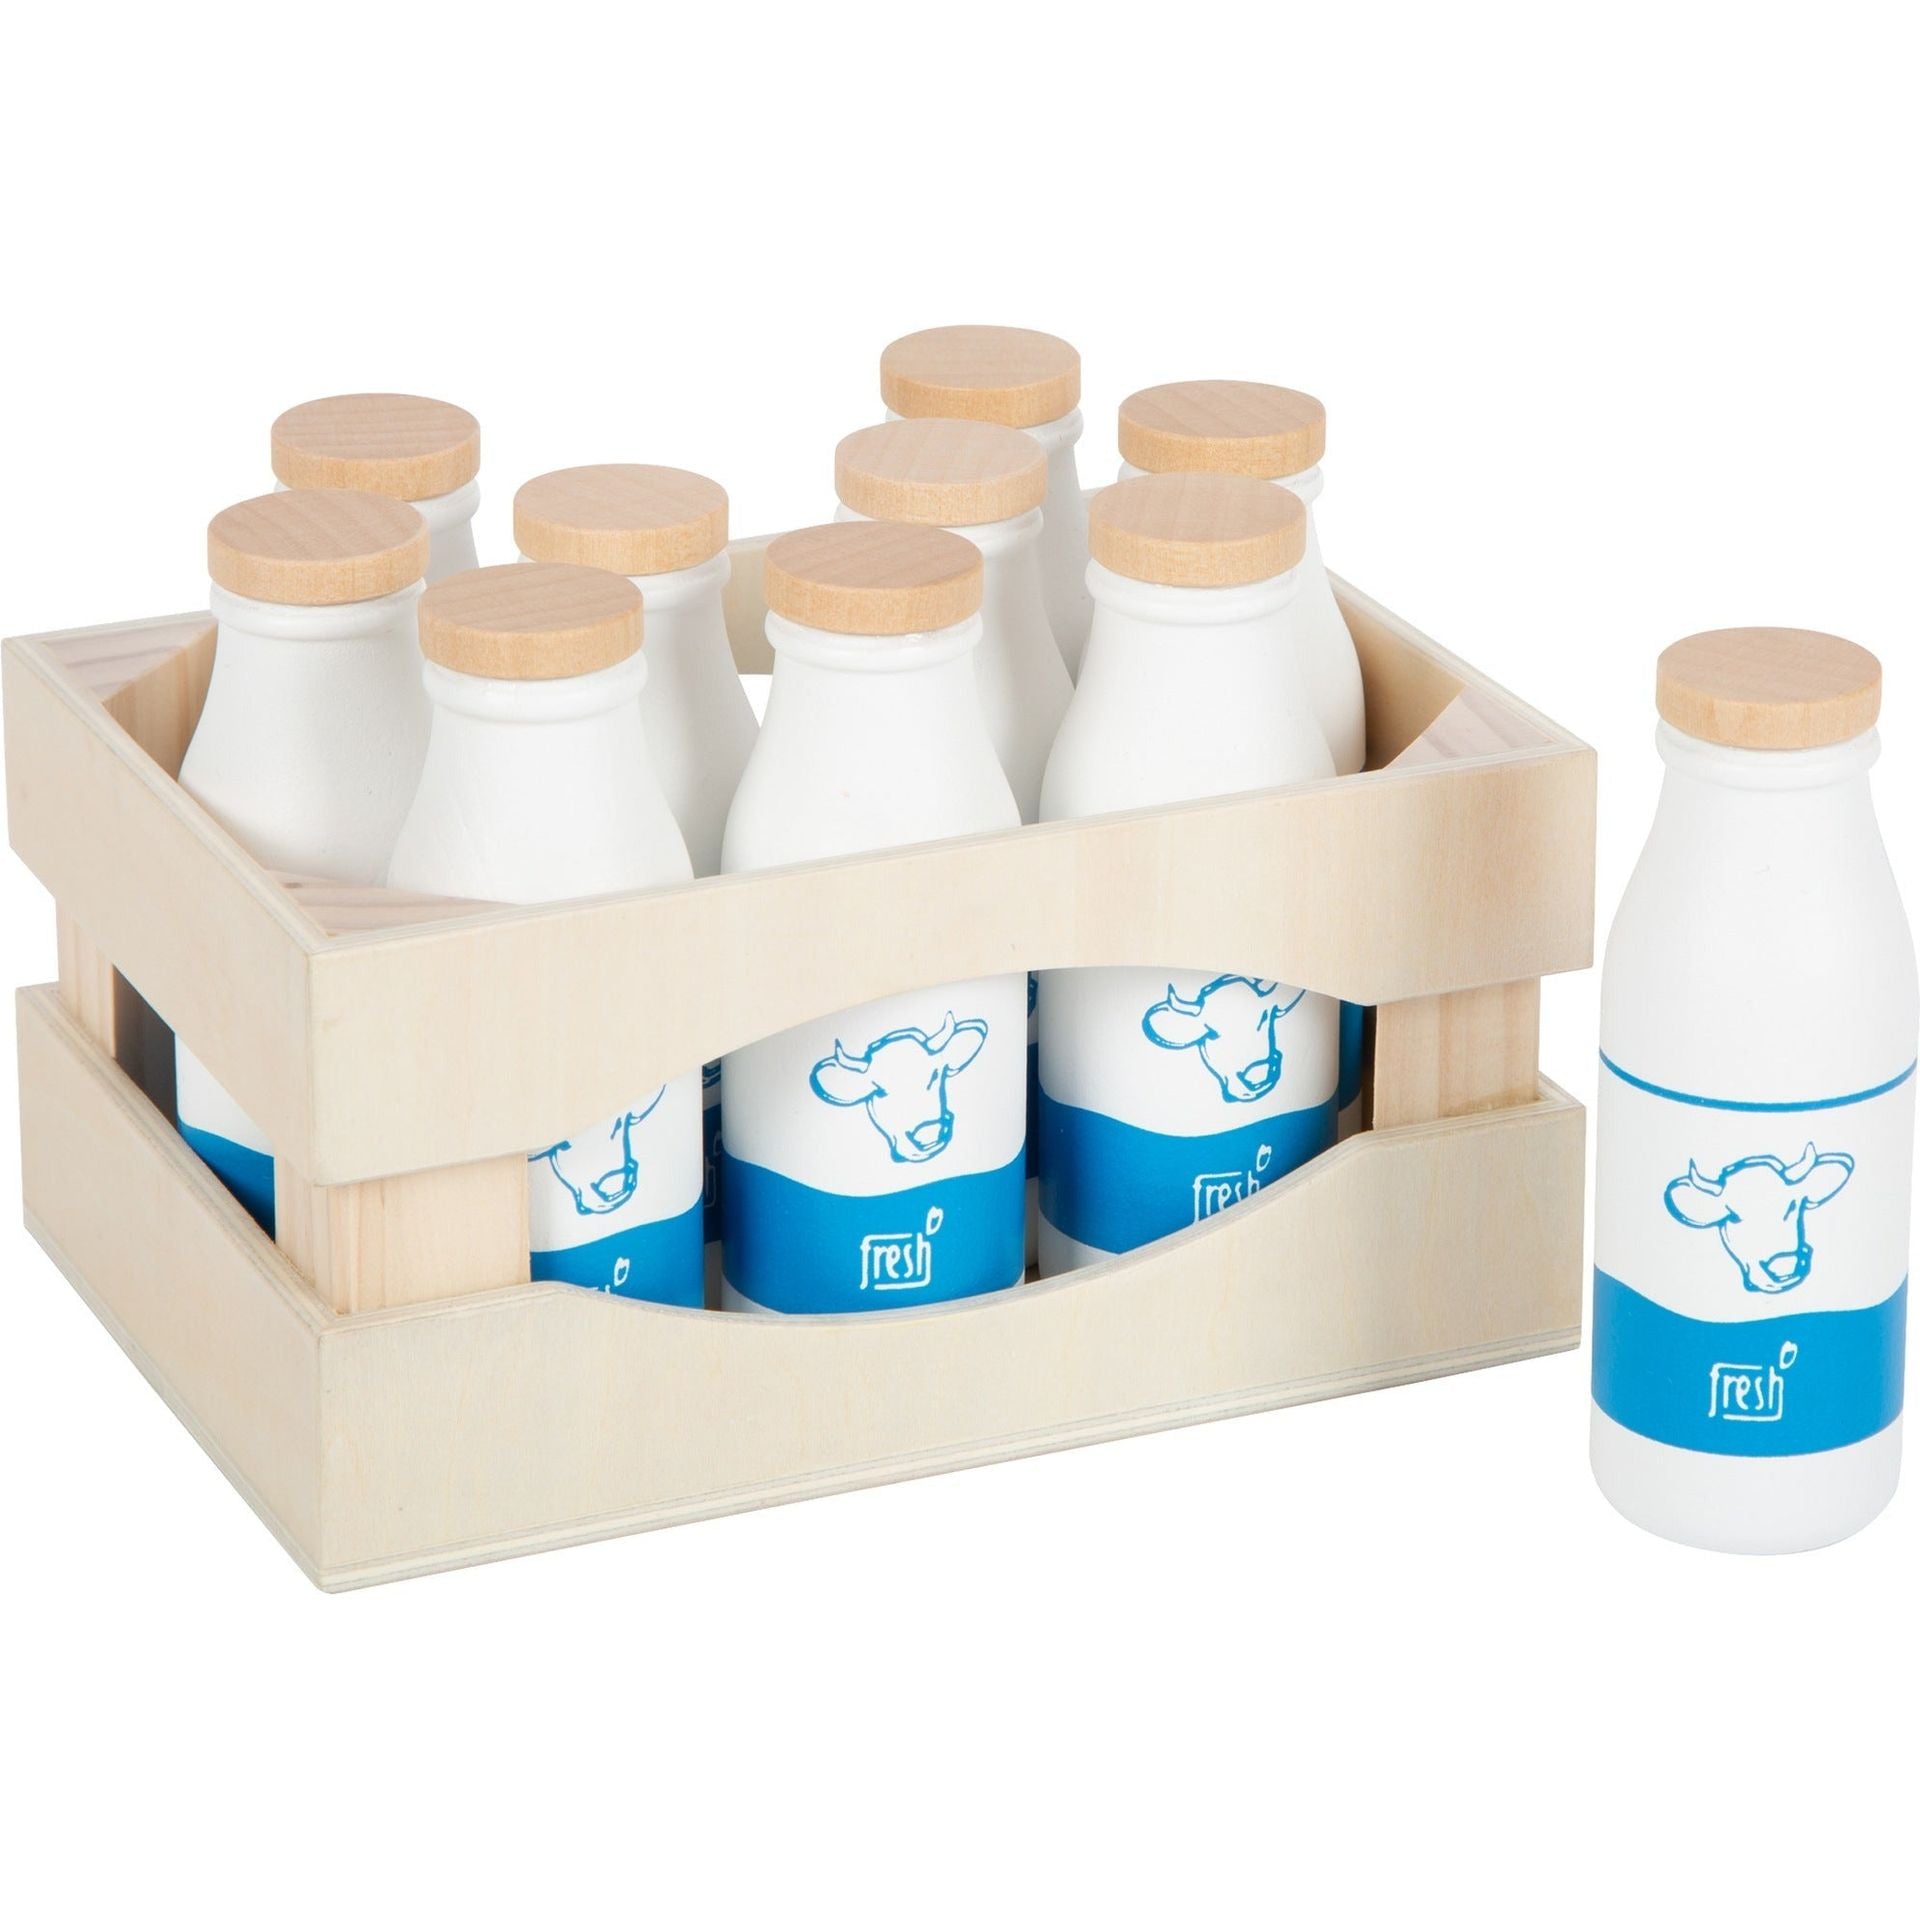 Milch Miniatur Flasche, Puppenhaus